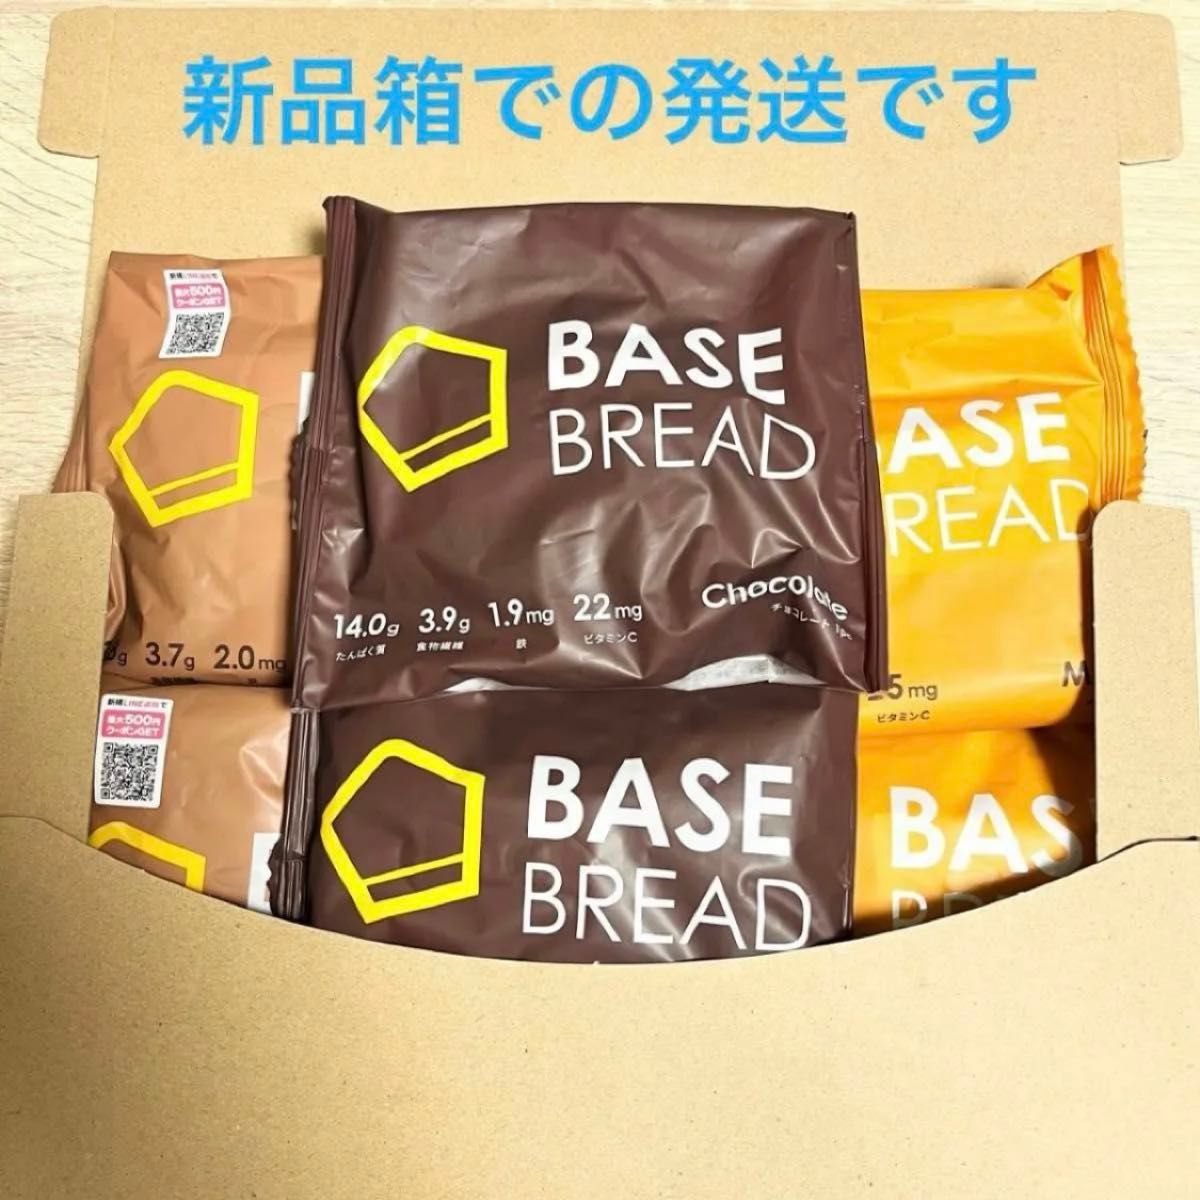 BASE BREAD ベースブレッド チョコレート メープル シナモン 3種類×2個ずつ 計6個セット ベースブレッド ダイエット